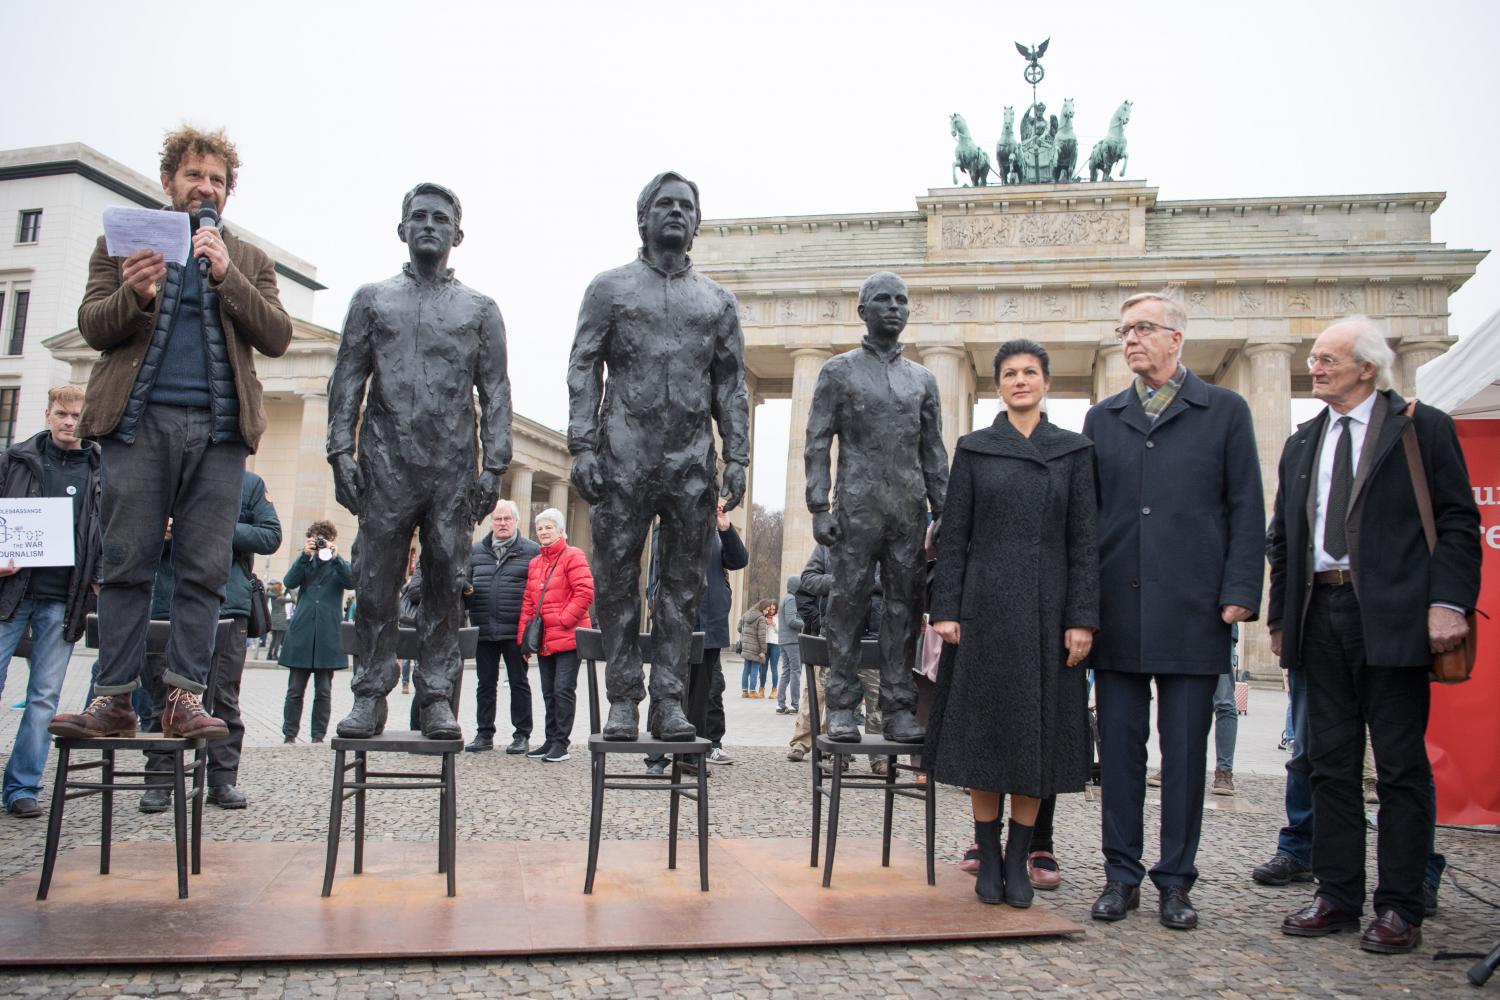 Skulpturen von Edward Snowden, Julian Assange und Chelsea Manning am Brandenburger Tor.